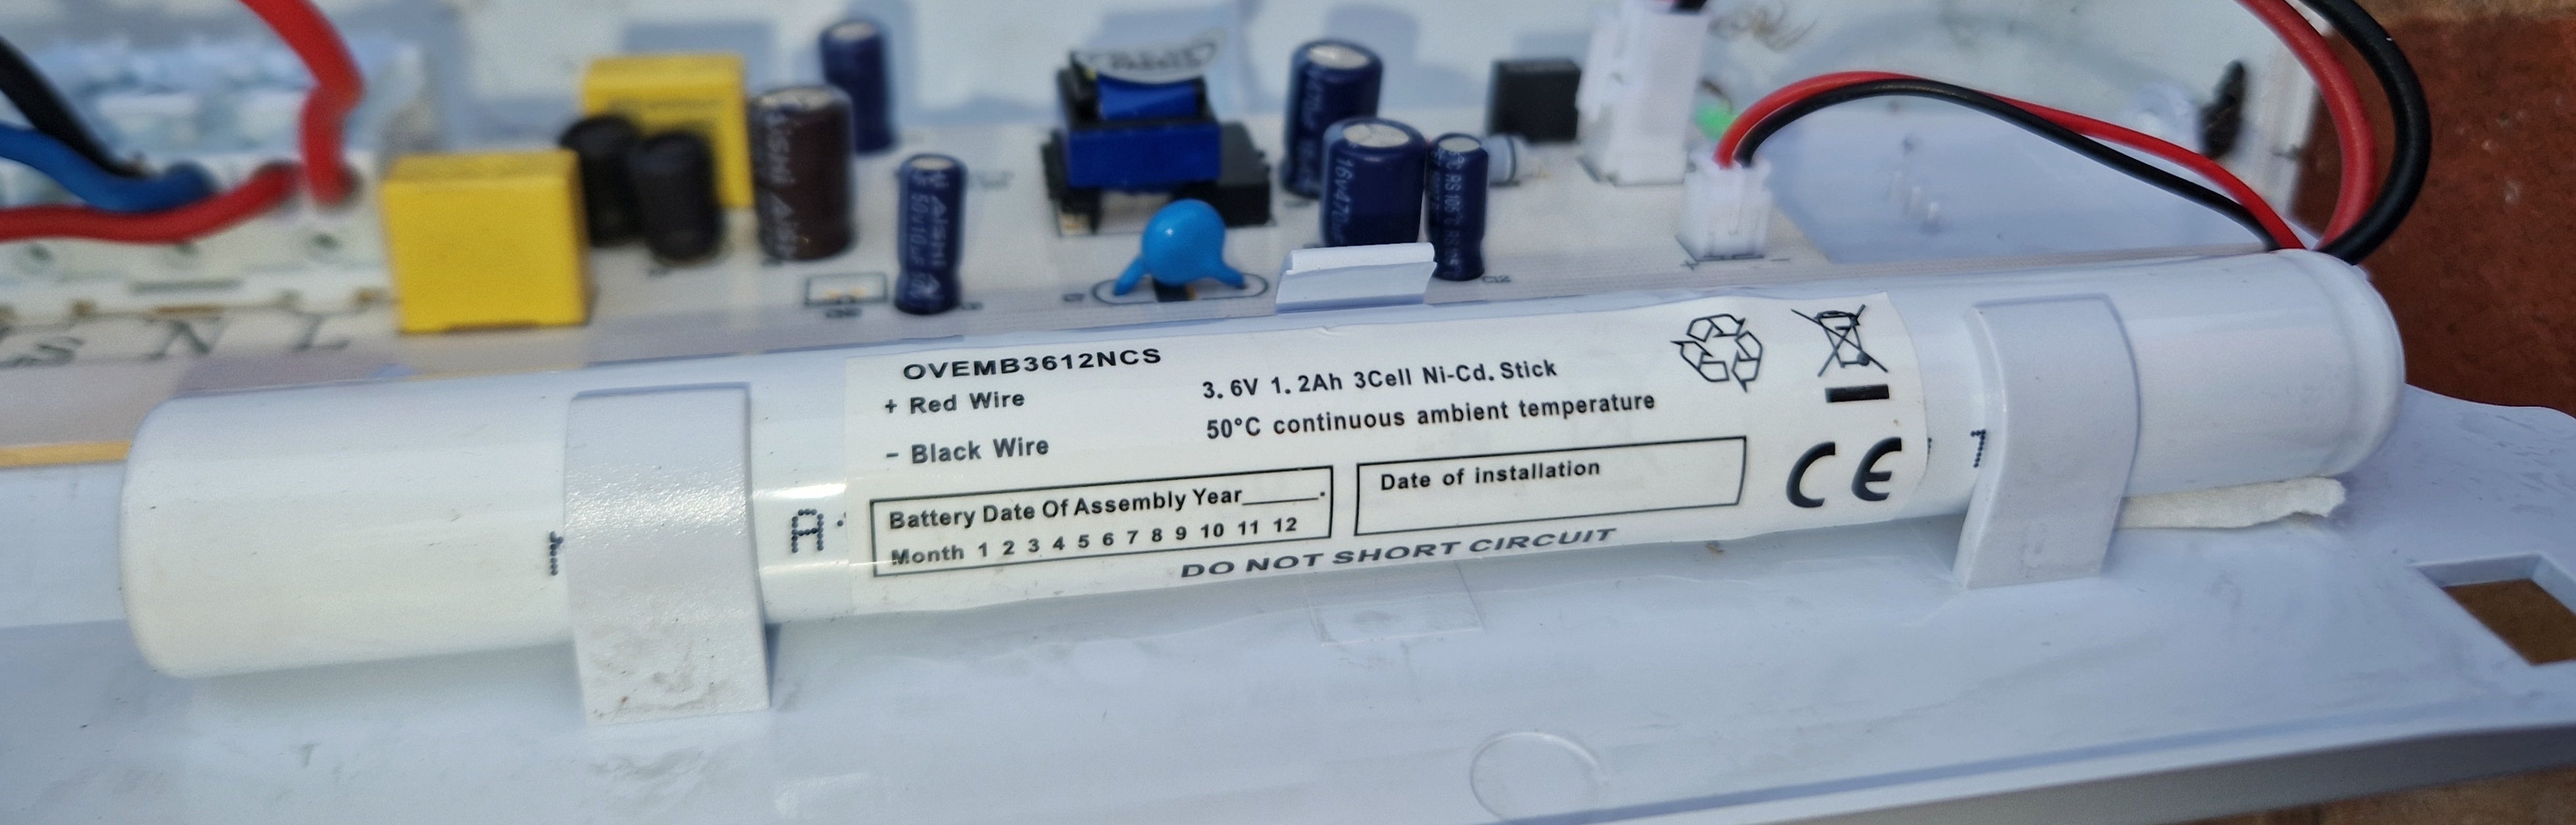 3/1A1200B-C007F 3.6V 1200MA "A" Size Nicd Emergency Batteries Easy Control Gear - Easy Control Gear